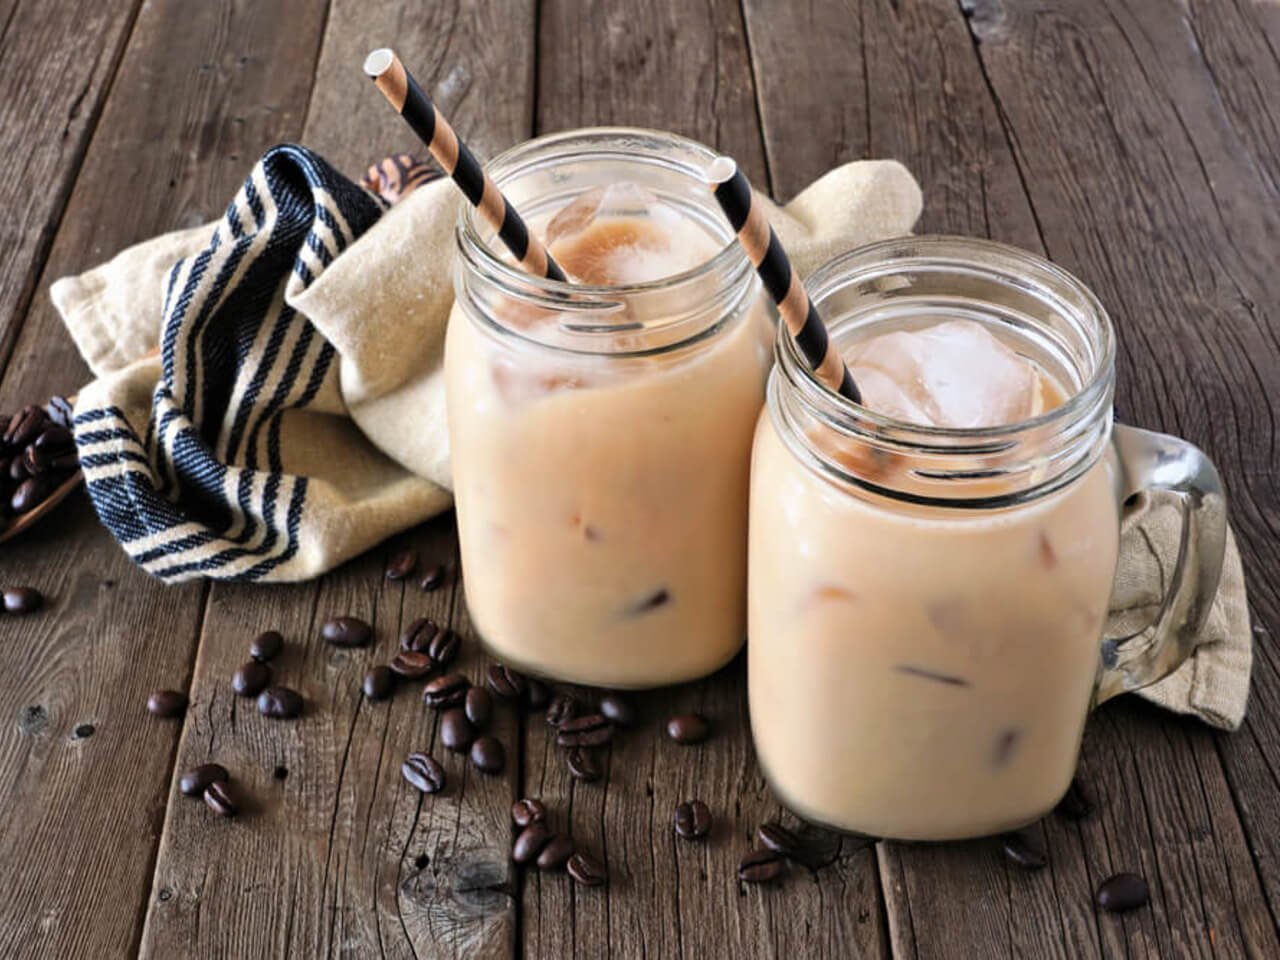 Ledové osvěžení: Recept na krémové kávové smoothie